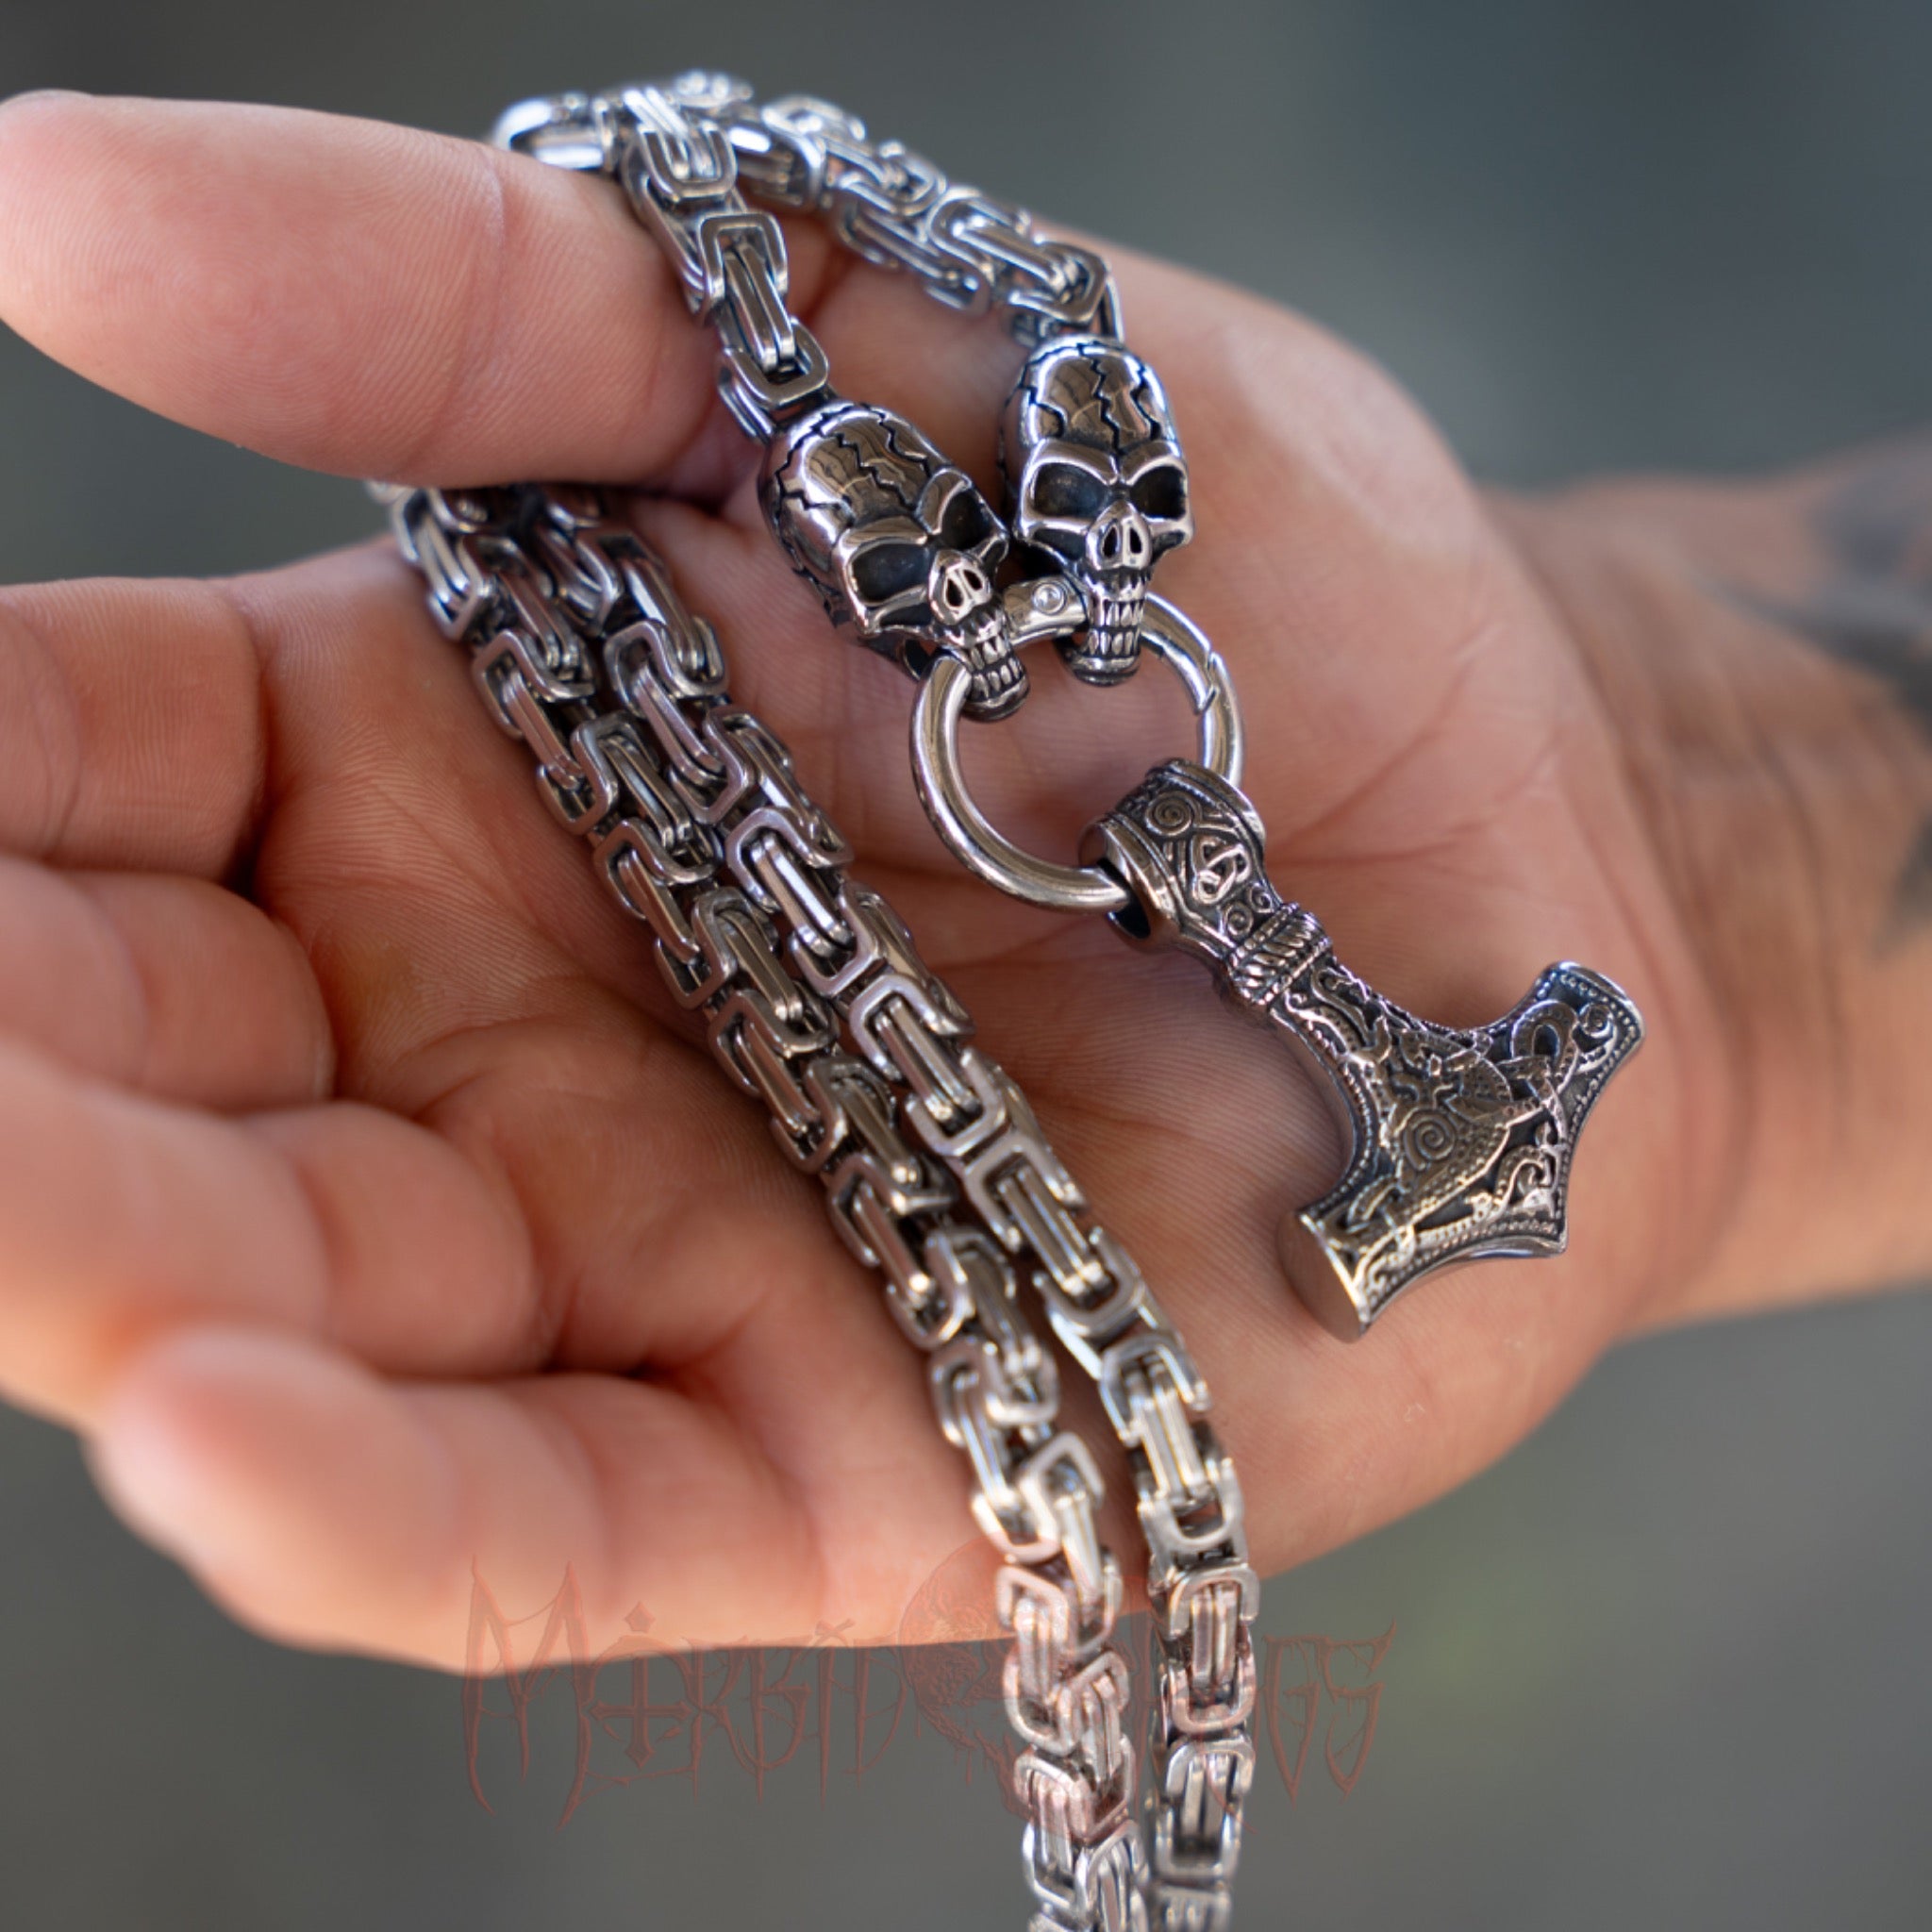 Roderick Skulls Necklace Side